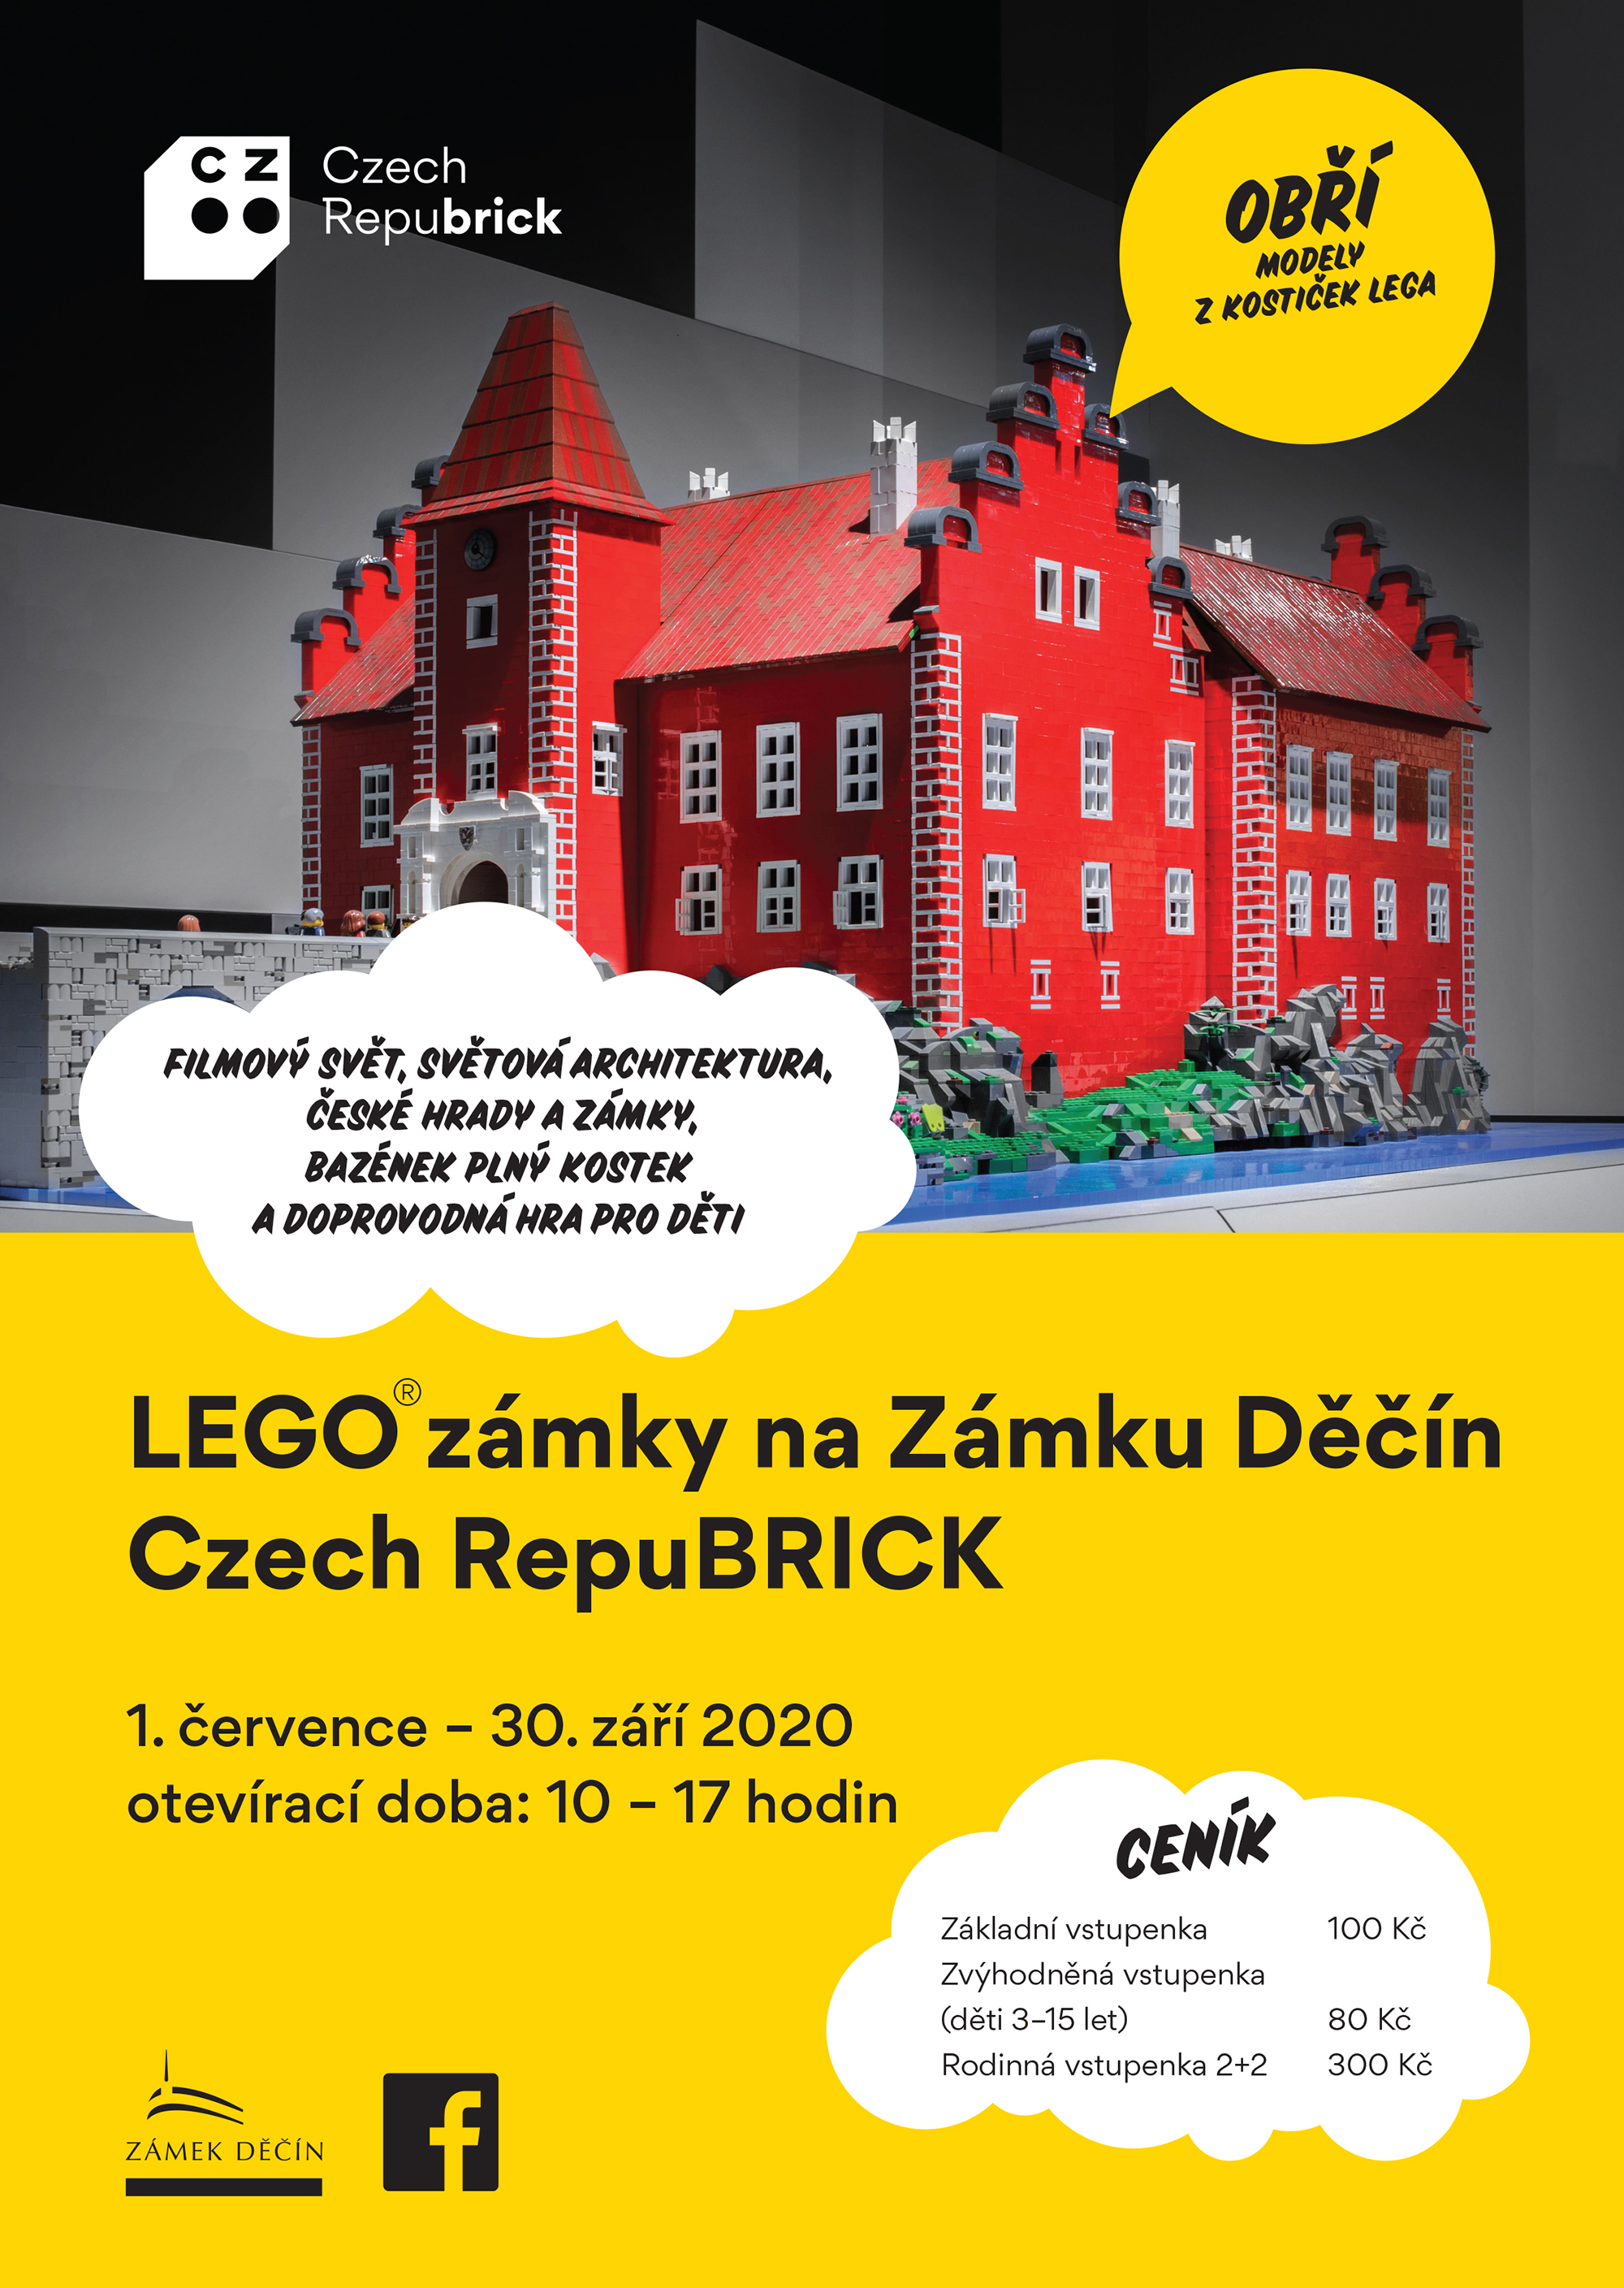 LEGO zámky na zámku Děčín